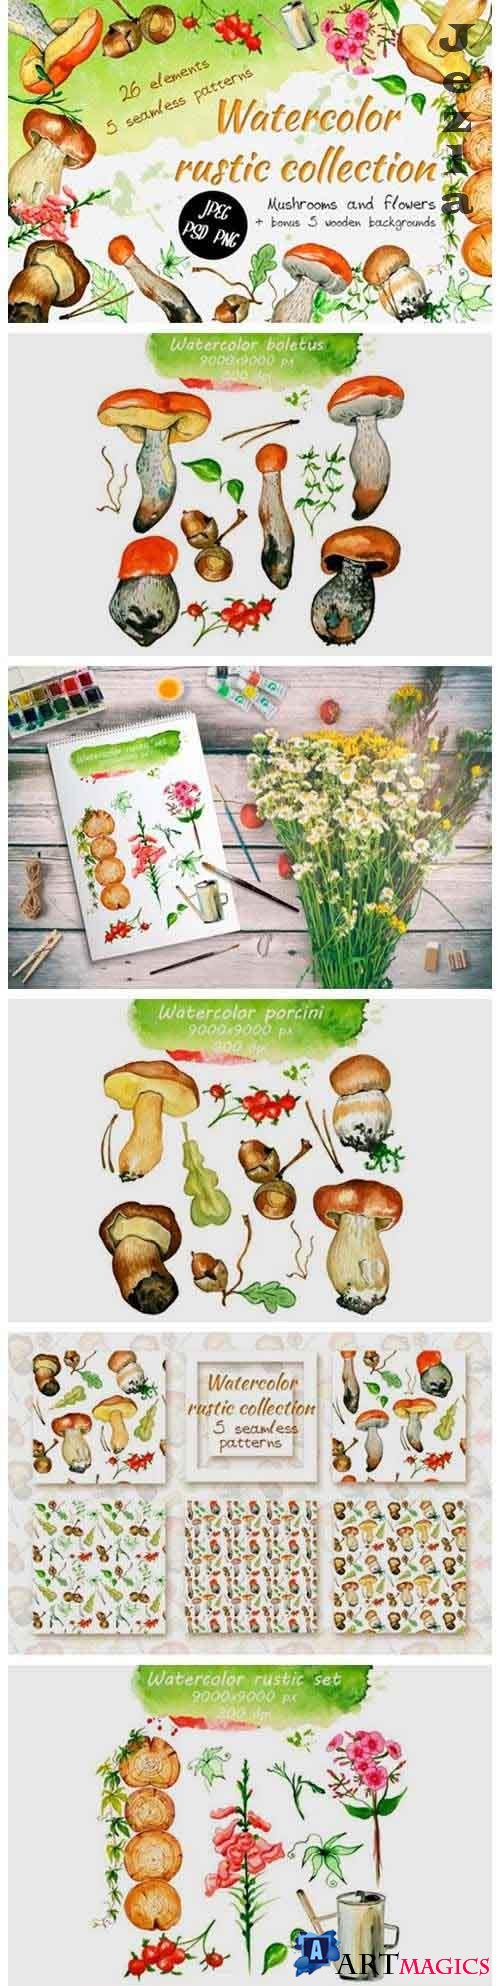 Watercolor rustic set with Mushrooms - 818188